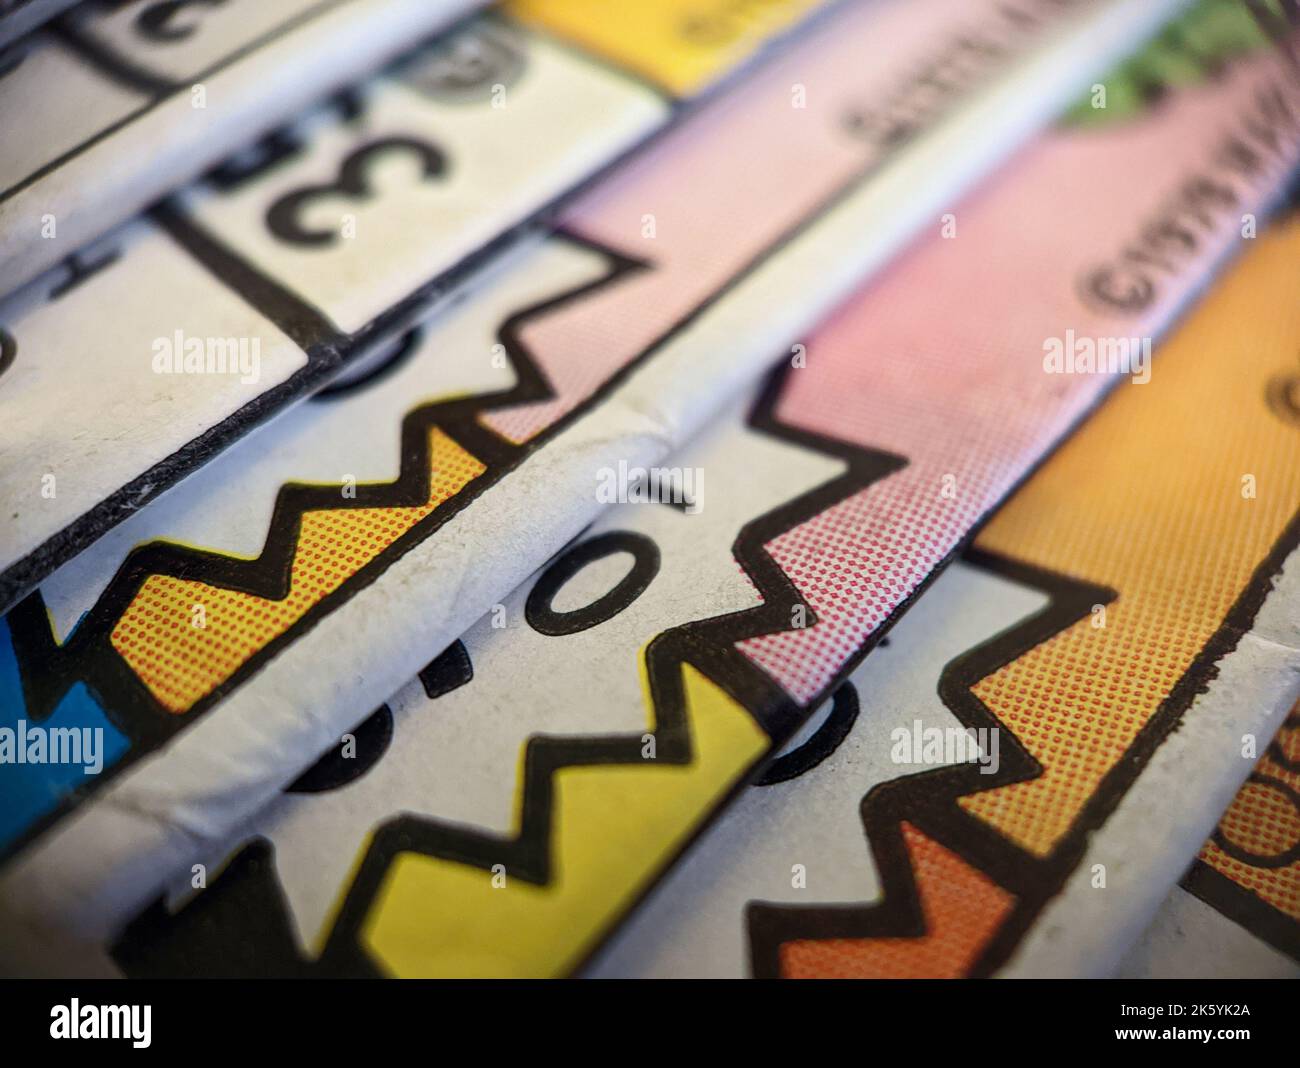 Die Nahaufnahme einer alten Comicsammlung, die auf einem Stapel gestapelt ist, erzeugt eine bunte Papierstruktur mit abstrakten Formen im Hintergrund Stockfoto